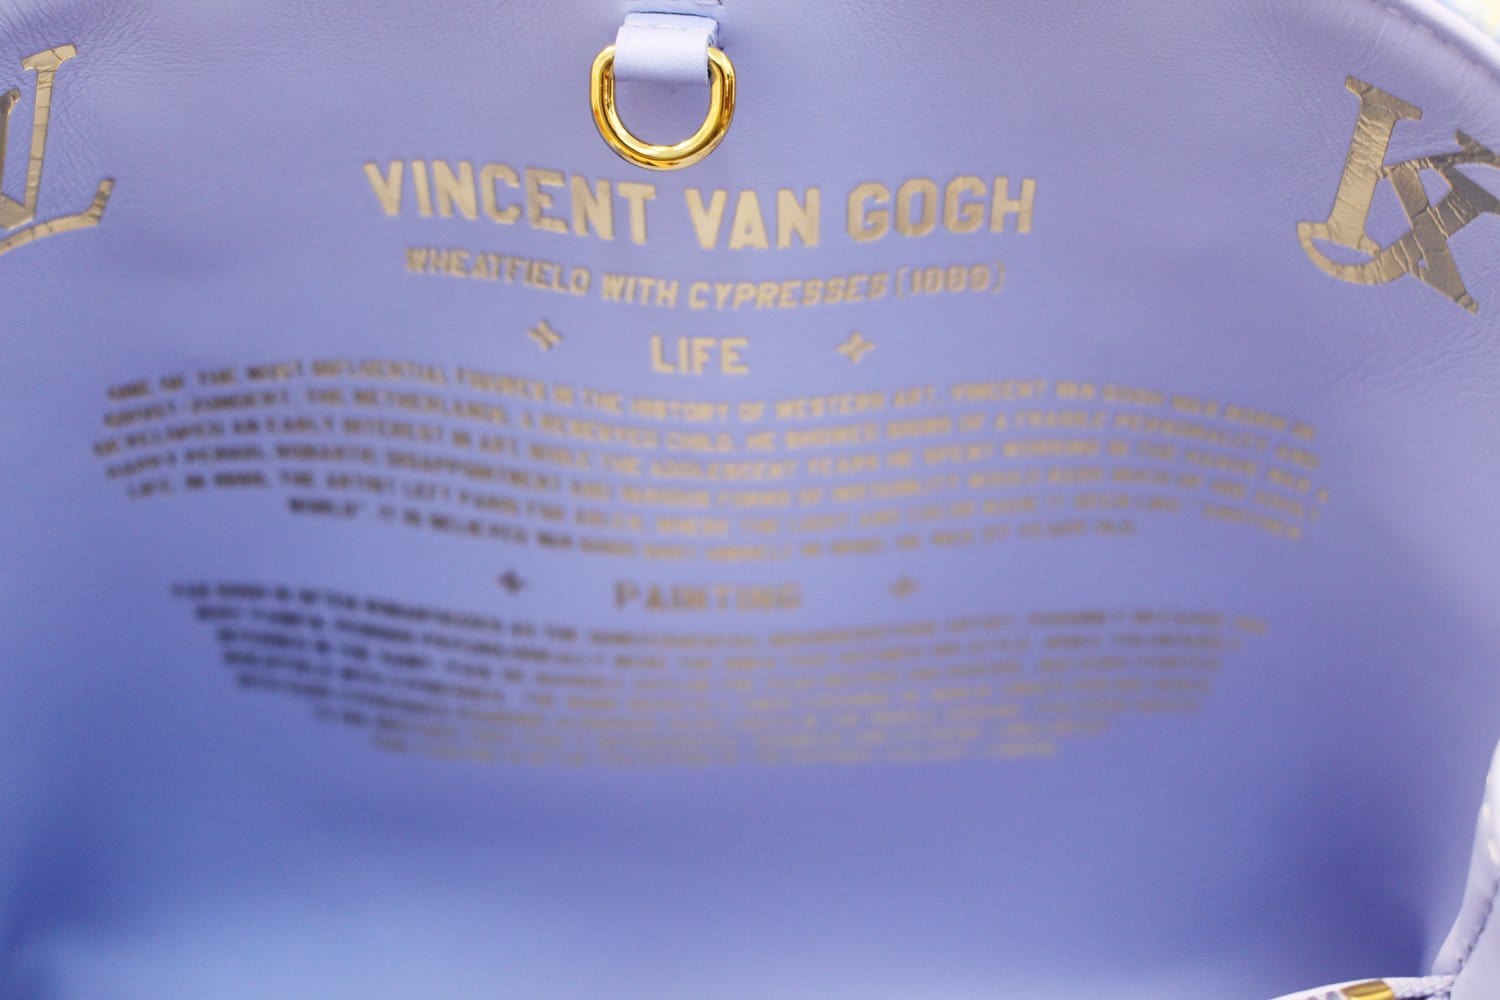 Louis Vuitton Vincent Van Gogh Bag